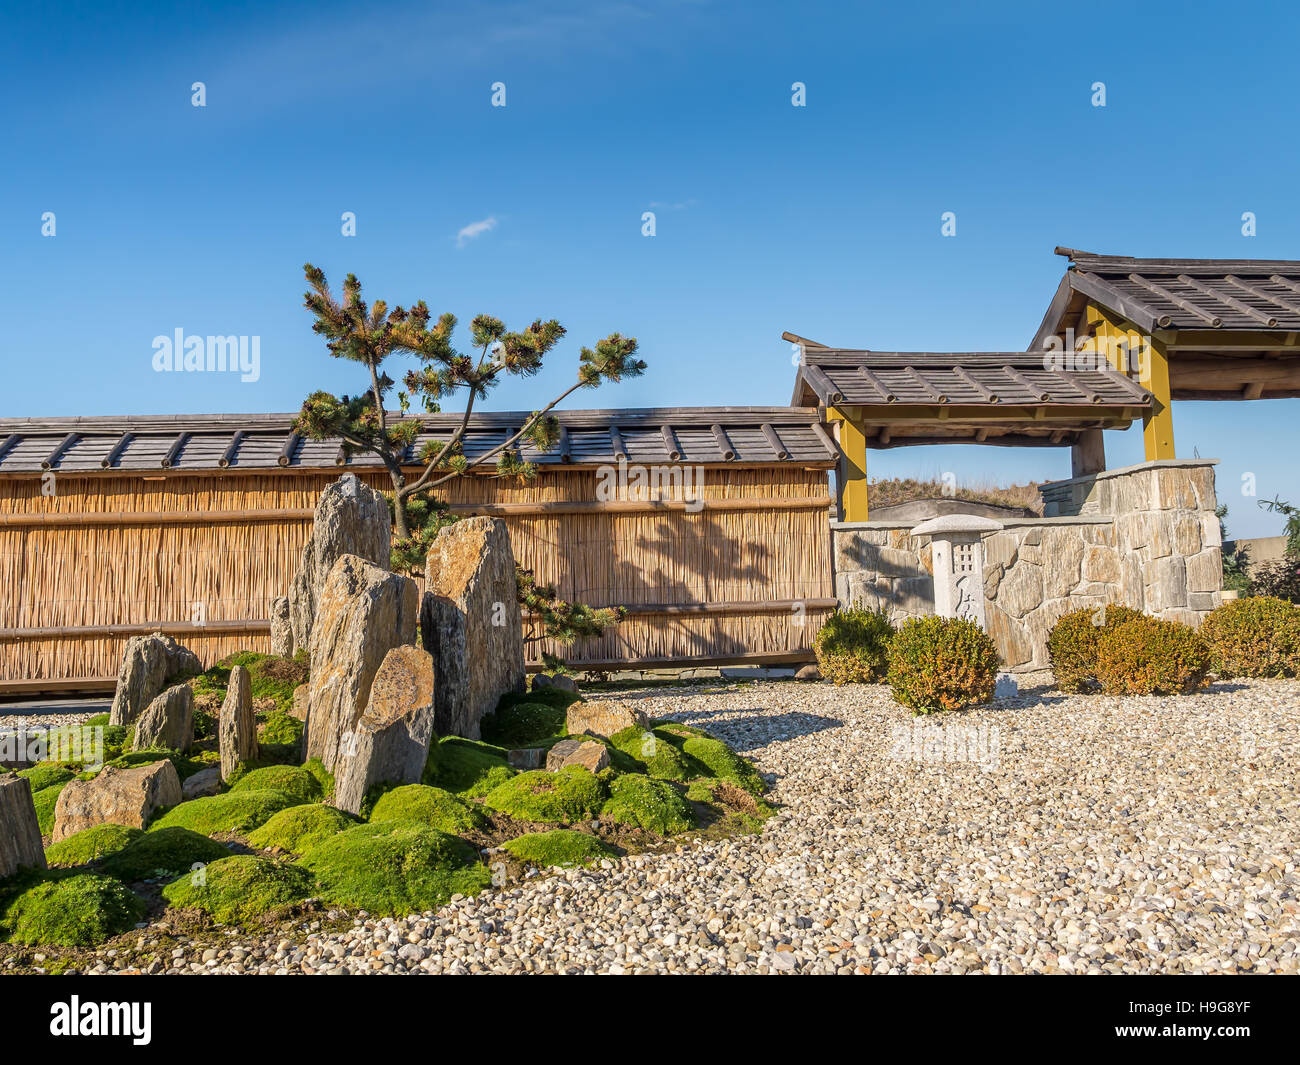 A typical Japanese rock garden Stock Photo